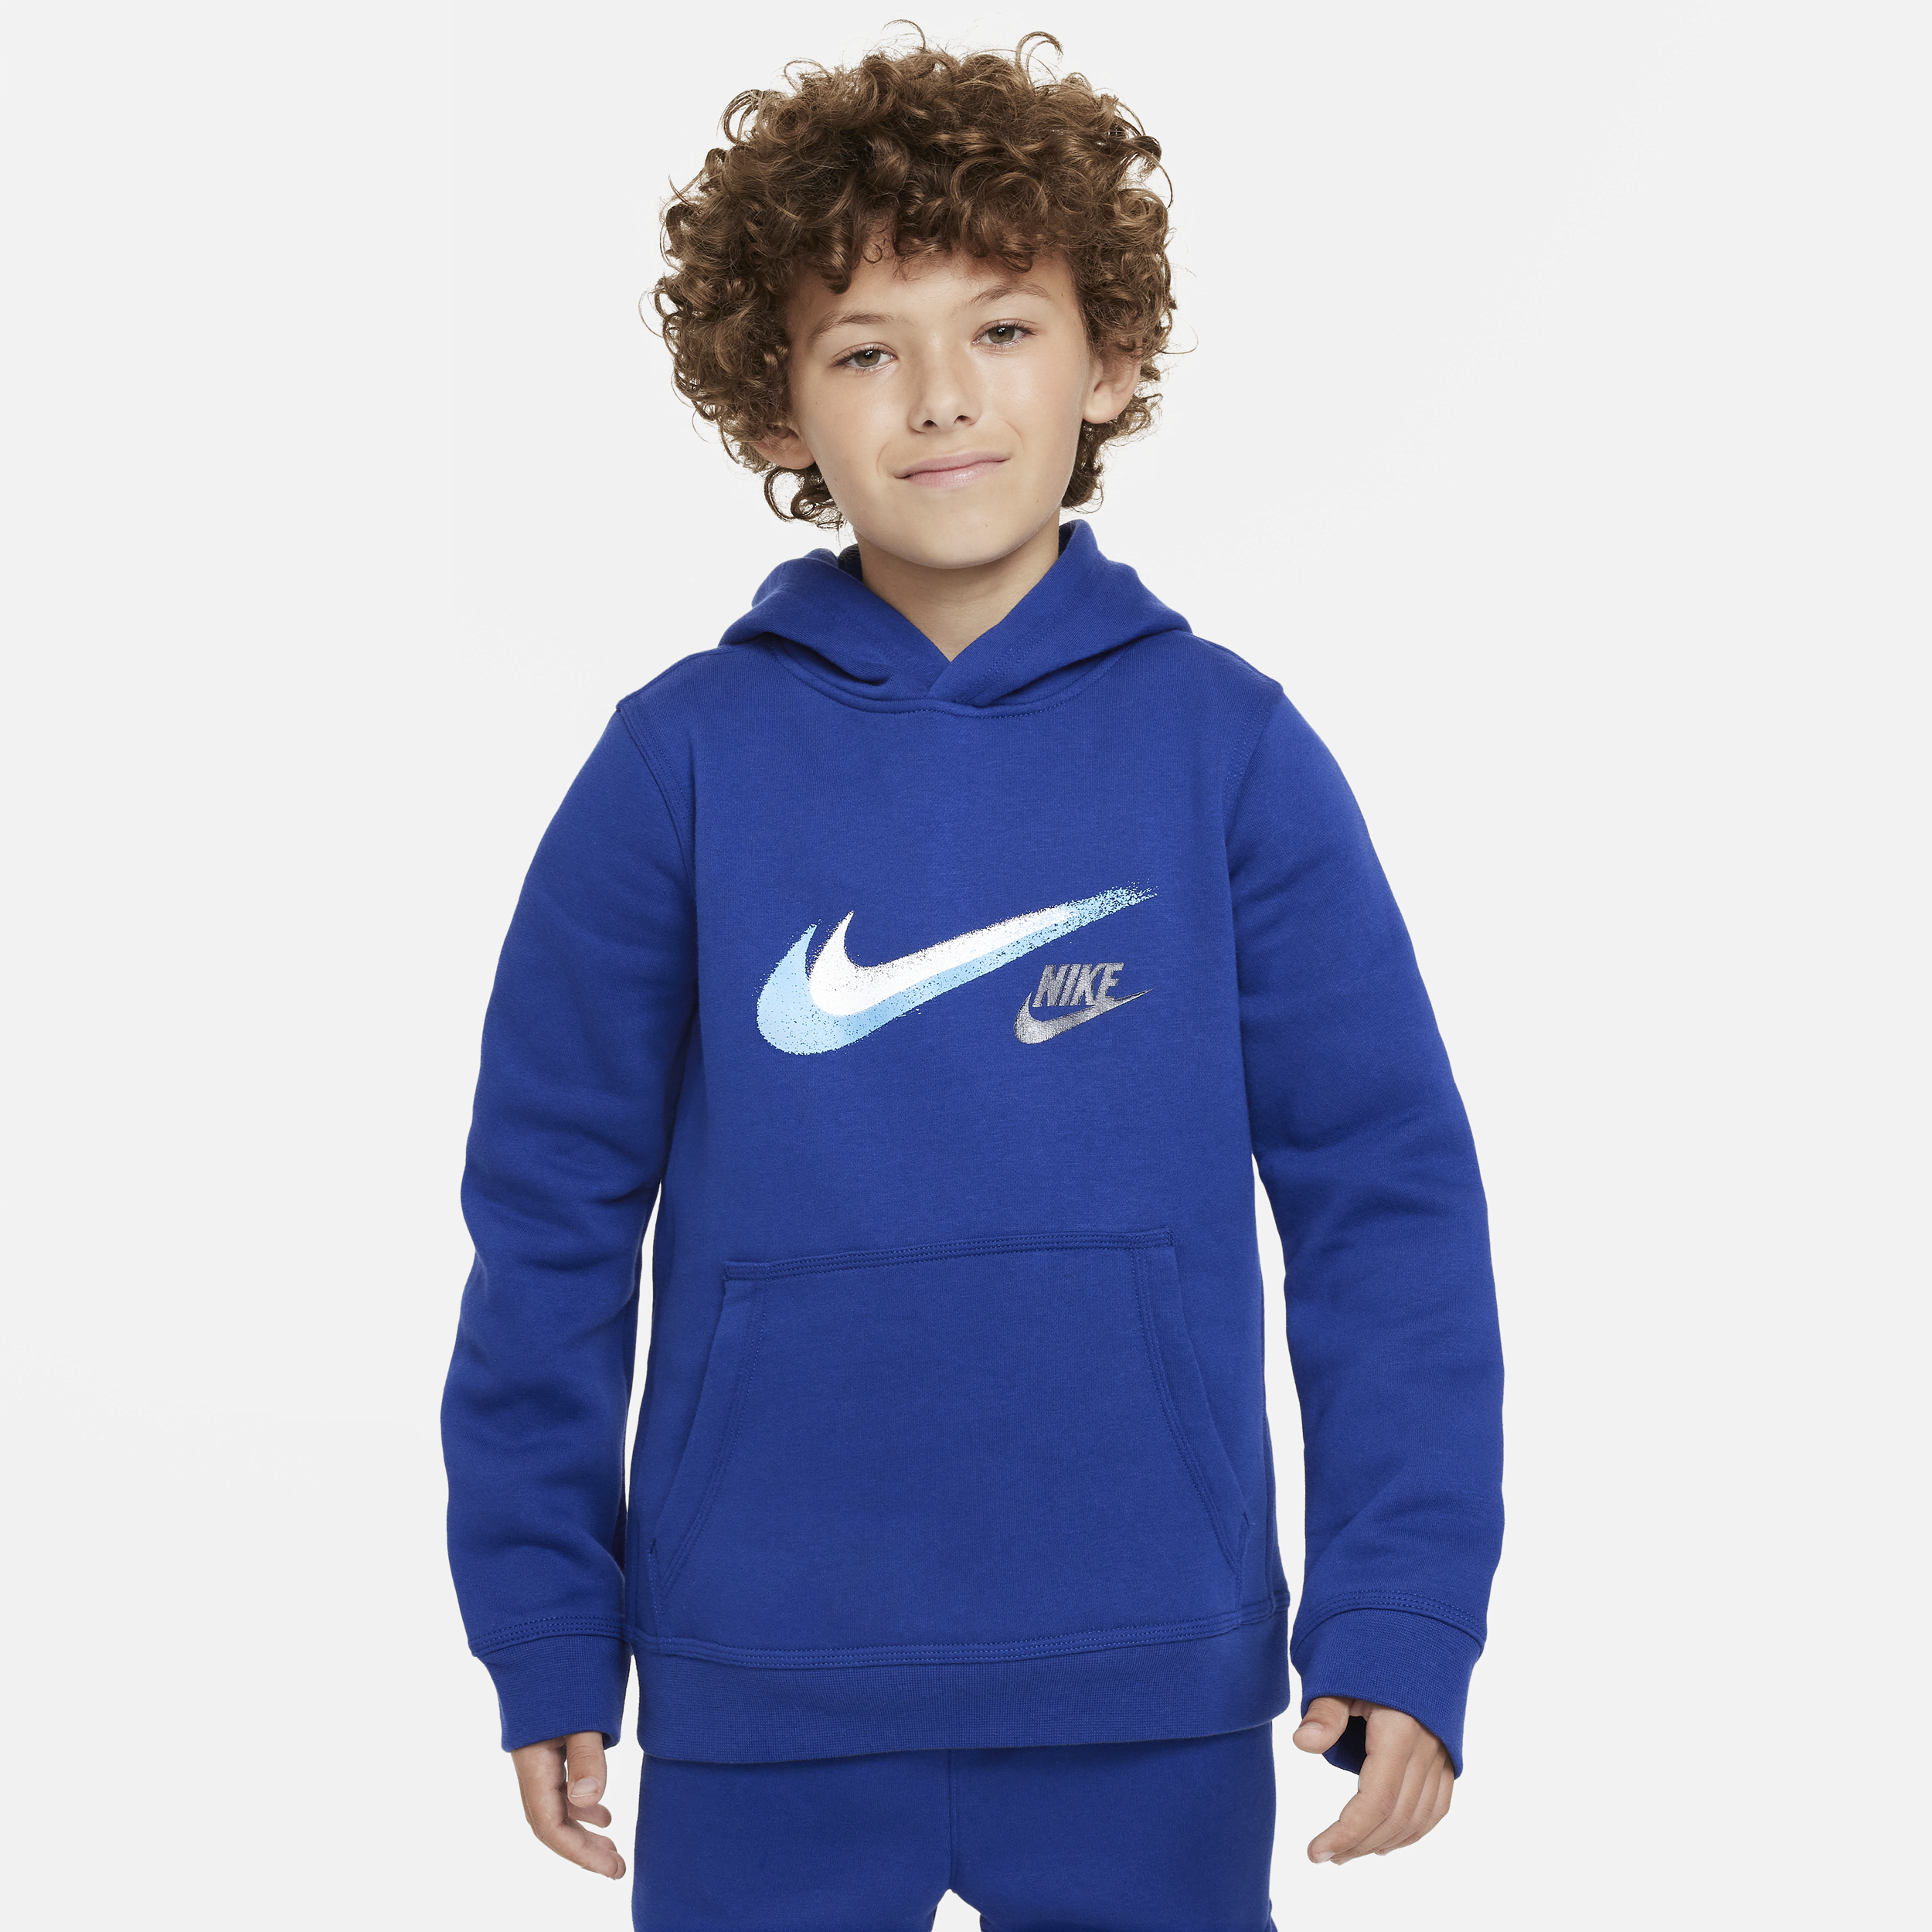 Nike Sportswear-pullover-hættetrøje i fleece med grafik til større børn (drenge) - blå